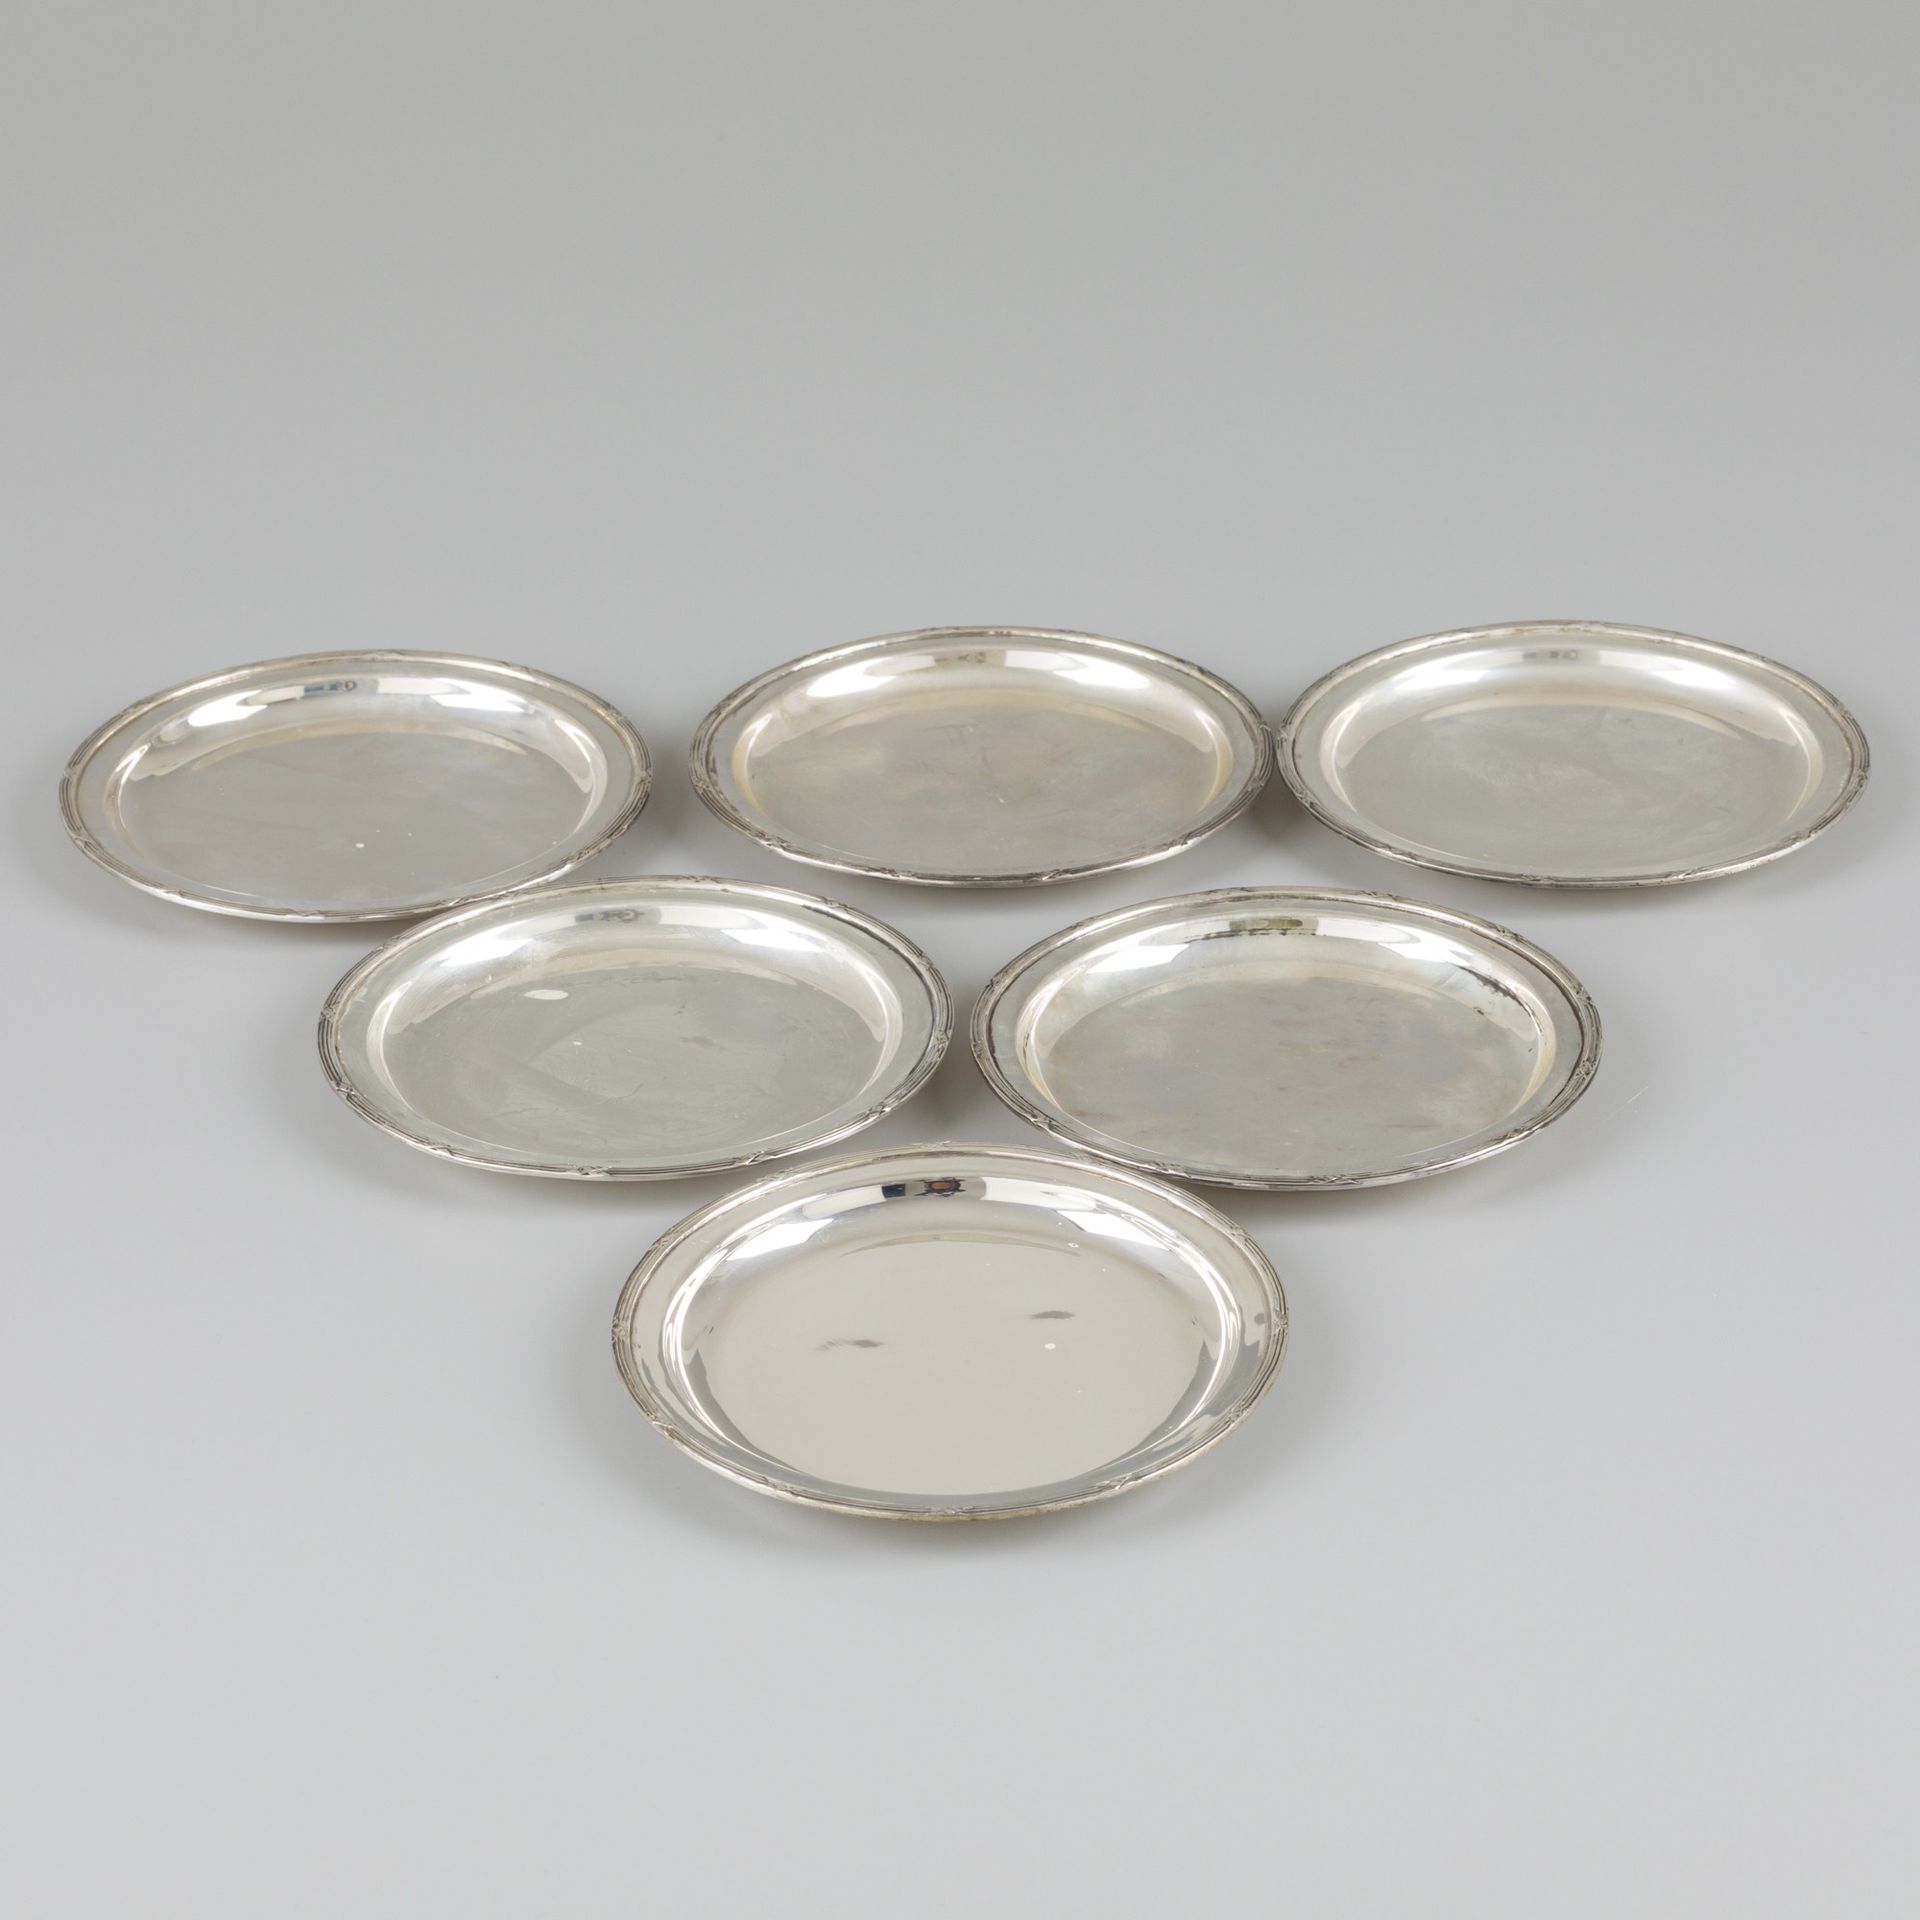 6-piece set of coasters silver. Diseño elegante con decoración de cintas y lazos&hellip;